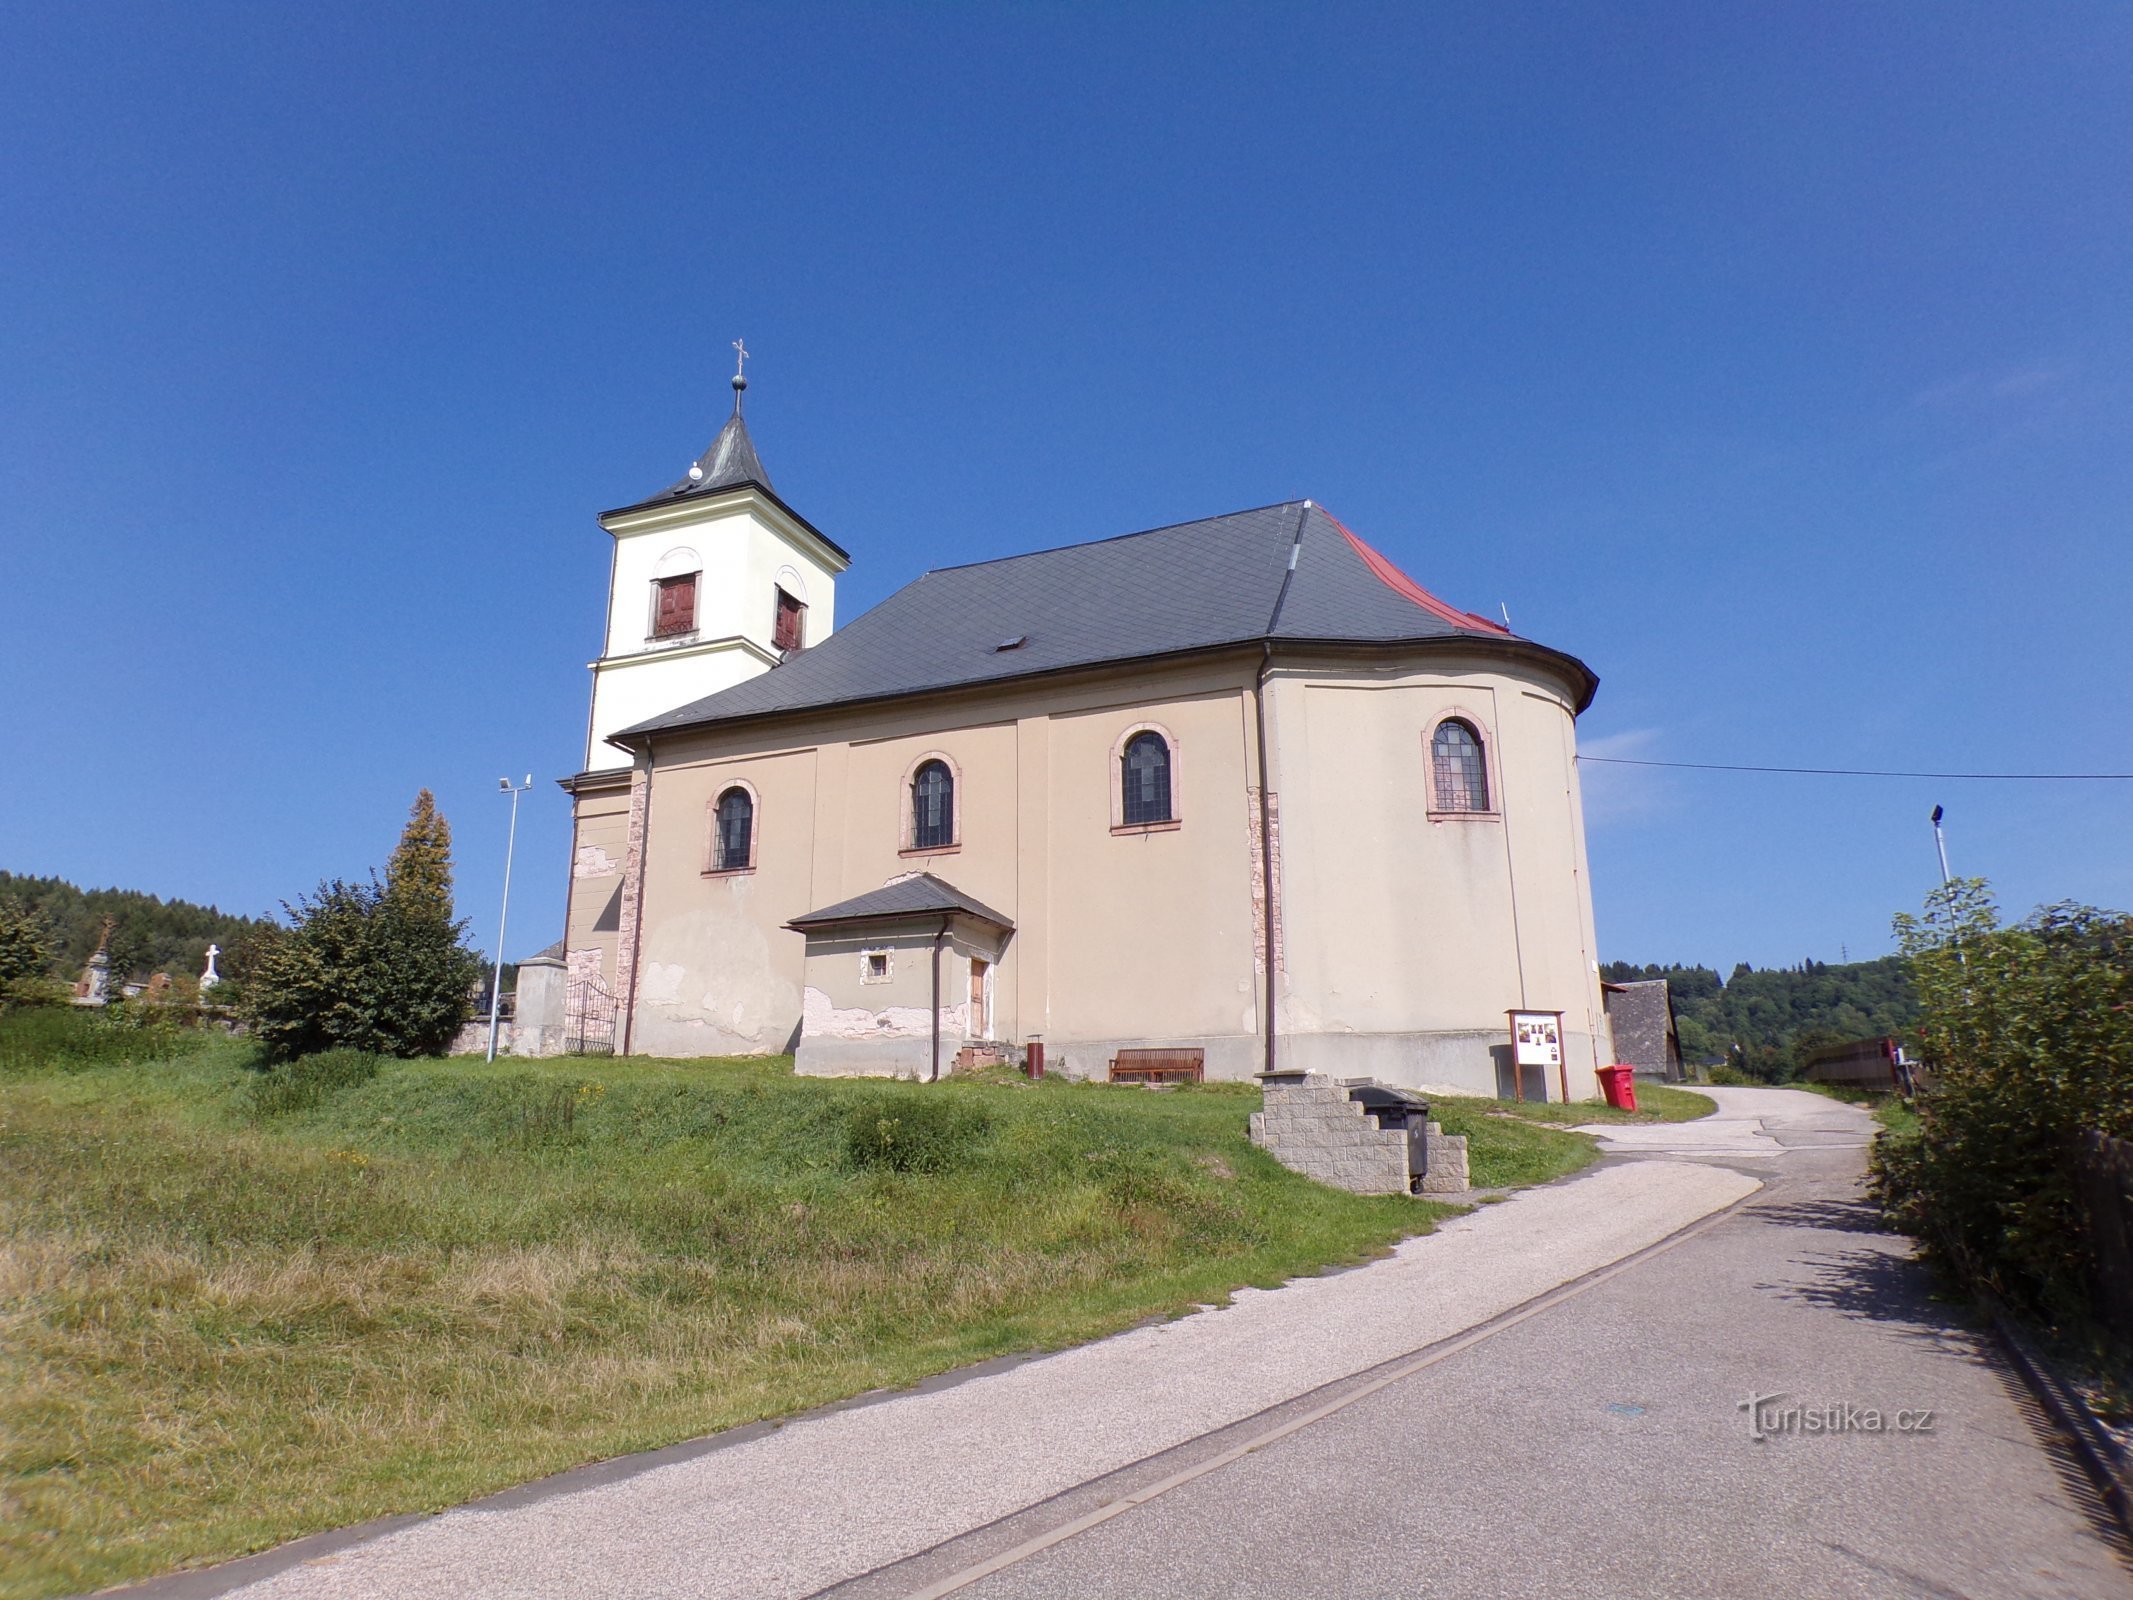 Biserica Sf. Ioan Botezătorul (Markoušovice, 6.9.2021)